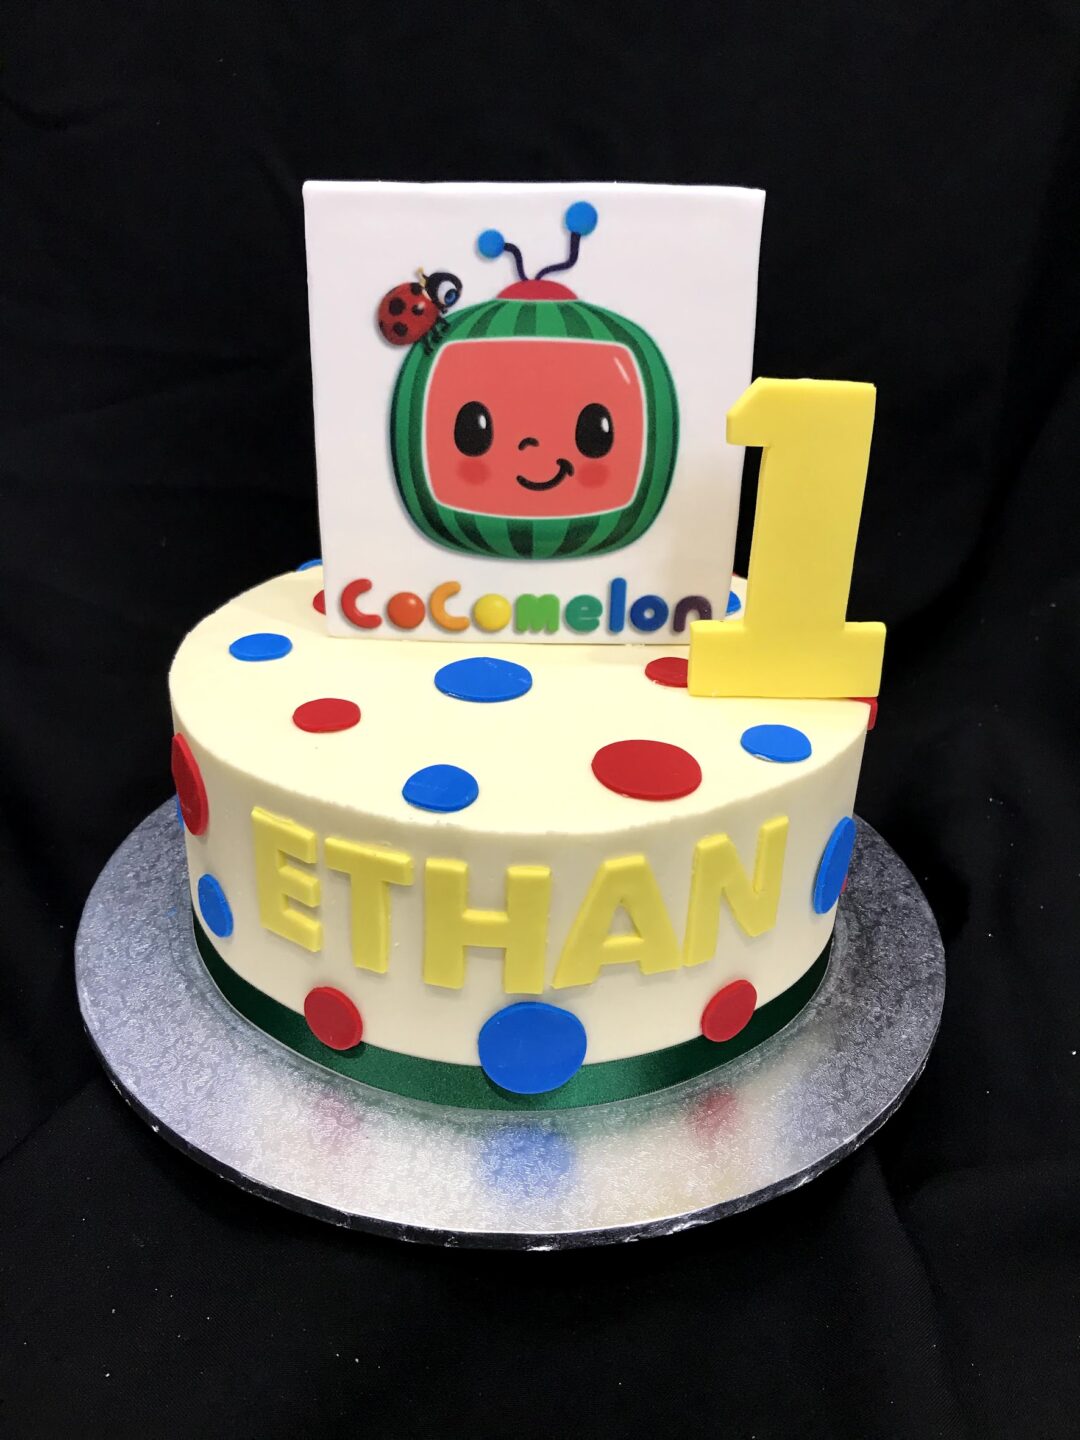 Square Shape Cocomelon Cake Design |Cocomelon Photo Cake With Fondant | Cocomelon Birthday Cake - YouTube